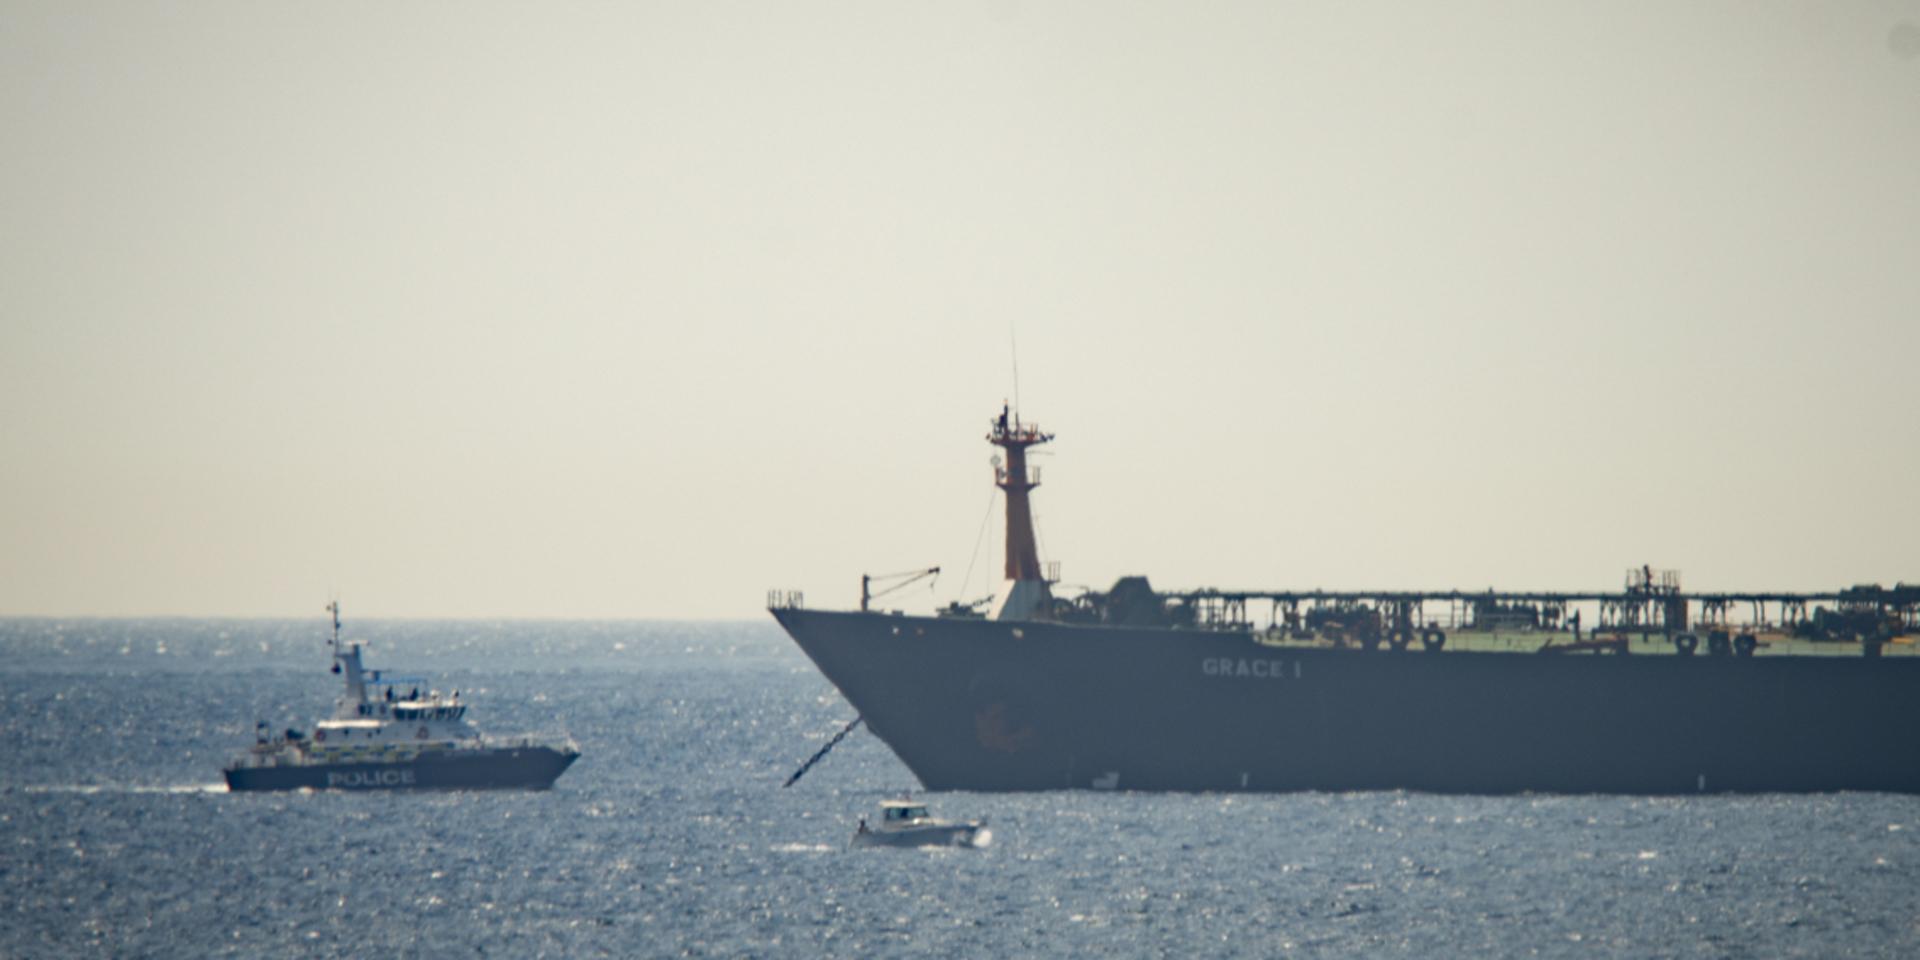 Den iranska beslagtagna oljetankern Grace 1 (till höger) i vattnen utanför Gibraltar den 4 juli. Arkivbild.